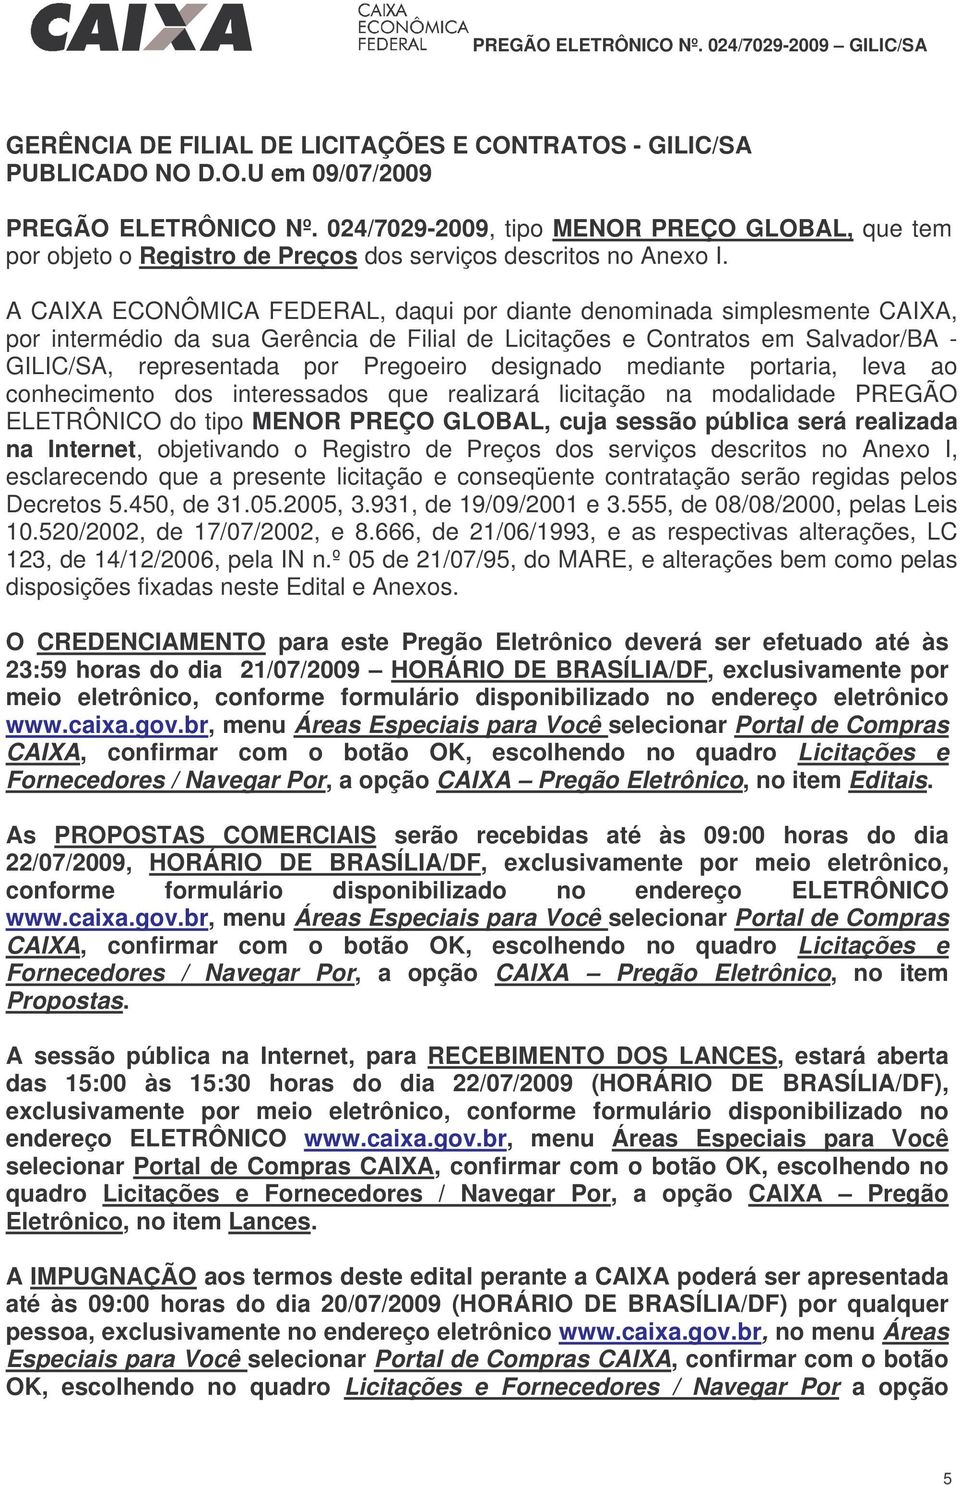 A CAIXA ECONÔMICA FEDERAL, daqui por diante denominada simplesmente CAIXA, por intermédio da sua Gerência de Filial de Licitações e Contratos em Salvador/BA - GILIC/SA, representada por Pregoeiro